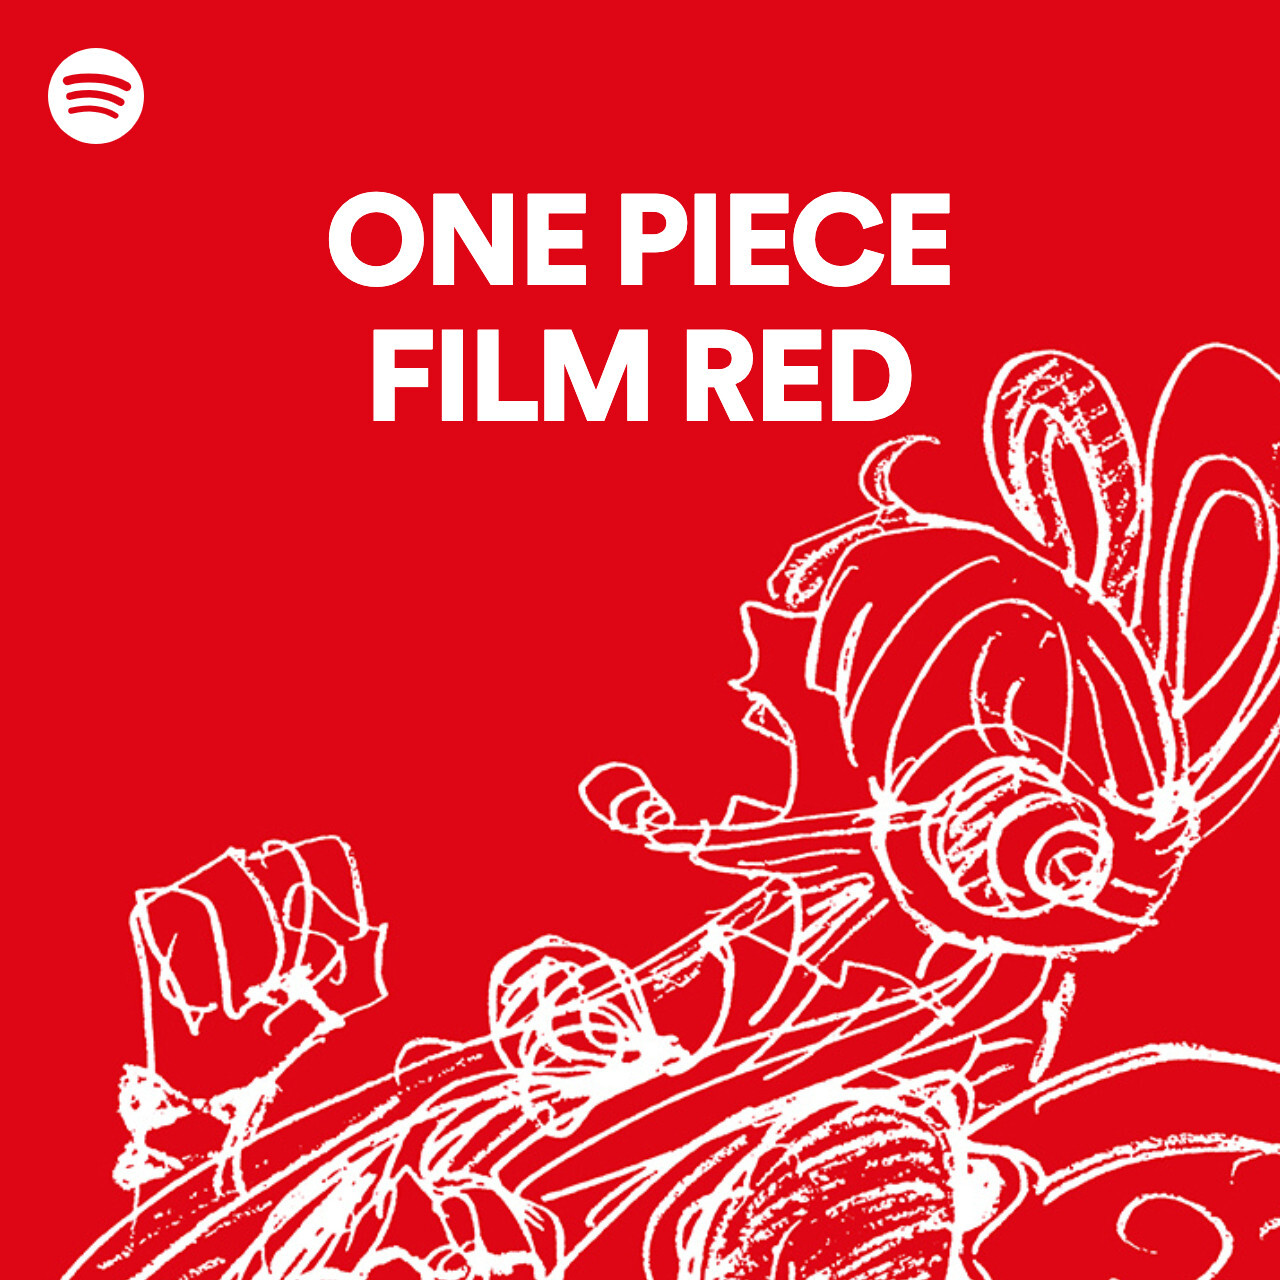 One Piece Film Red 公式 Spotify映画公式プレイリスト 本日配信開始 8月6日 土 の公開を記念して 本日より映画 One Piece の歴代主題歌が Spotifyで配信開始 今後 Op Filmred の楽曲も配信予定 プレイリストはこちら T